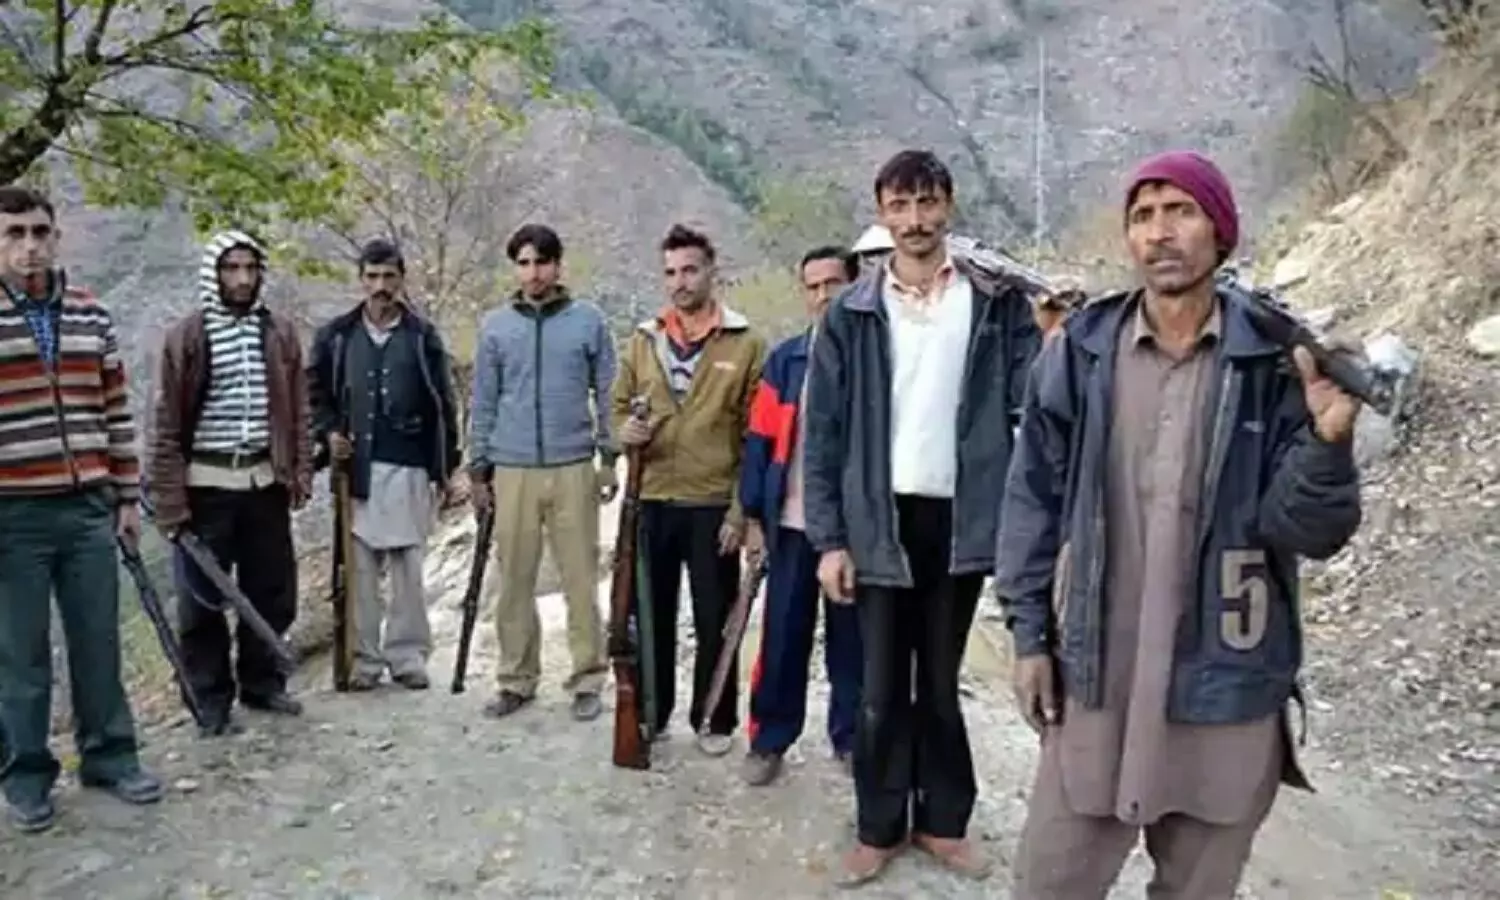 J&K Village Guard Scheme: जम्मू-कश्मीर के प्रत्येक गांव में तैनात होंगे सुरक्षाबल, सरकार ने विलेज गार्ड स्कीम को दी मंजूरी